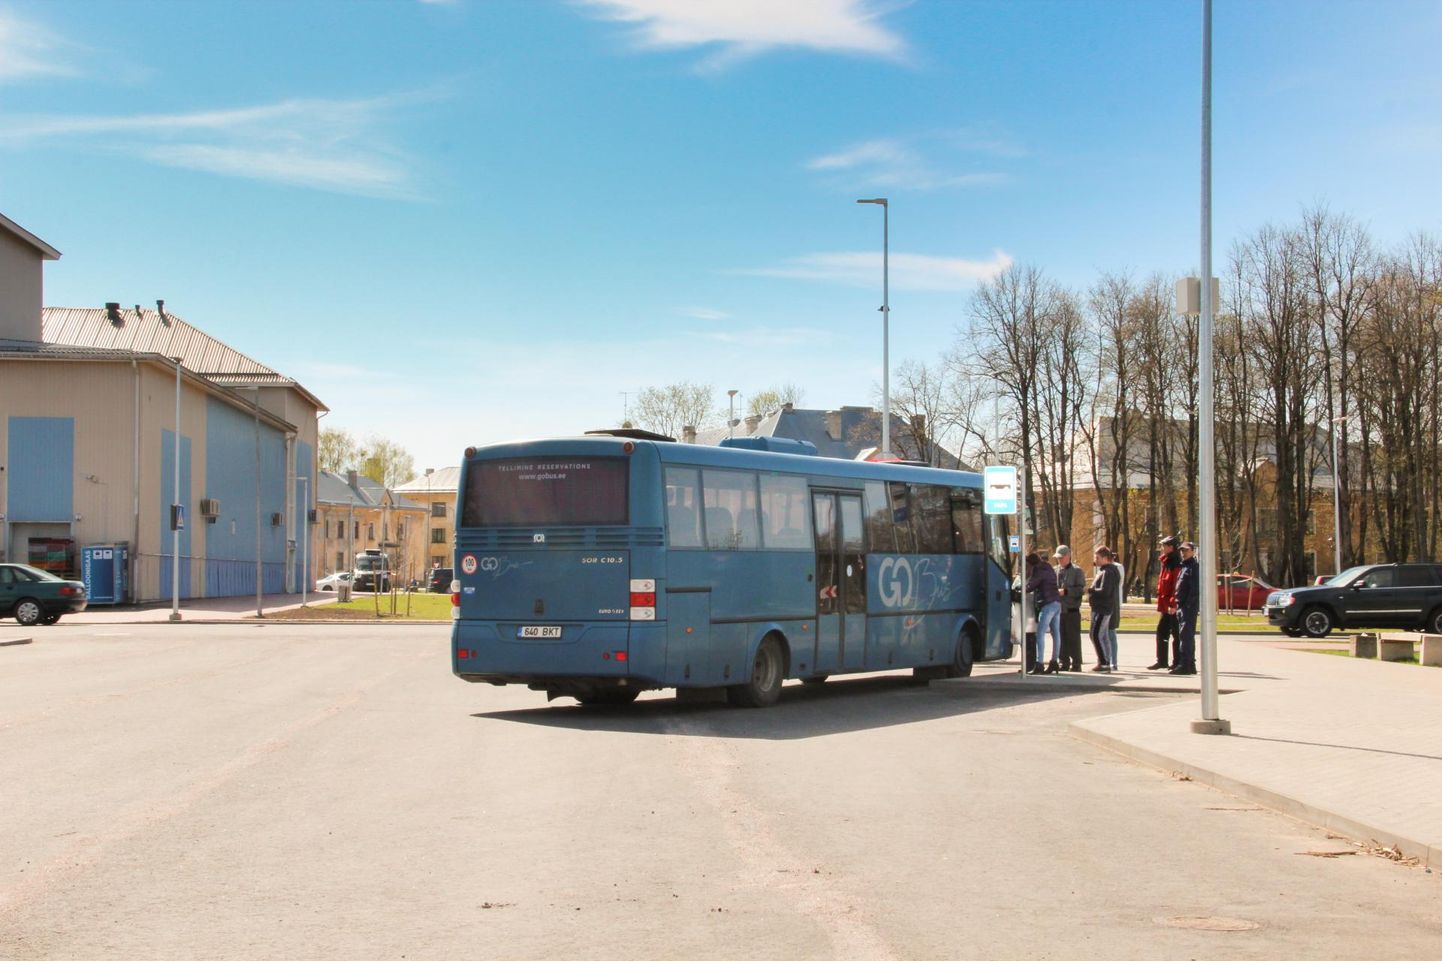 Tapa ja Rakvere vahel sõitjaid jagub. Inimesed on seda meelt, et kui sõit hakkab olema tasuta, tuleb ka bussiliiklust tihendada.